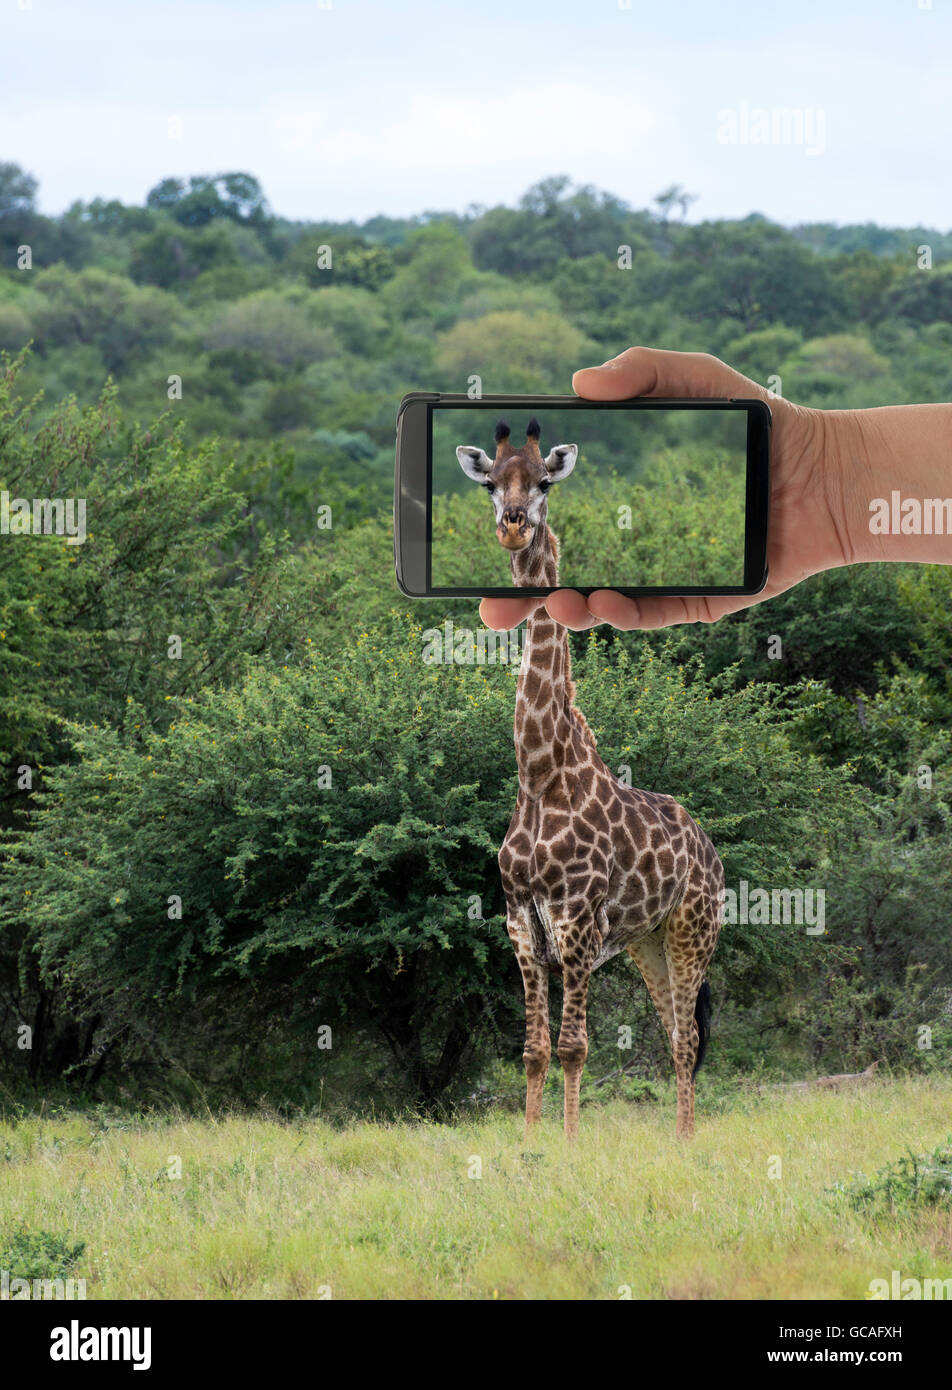 Décisions touristiques photo de girafe avec téléphone mobile ou smartphone dans le parc national Kruger en Afrique du Sud Banque D'Images